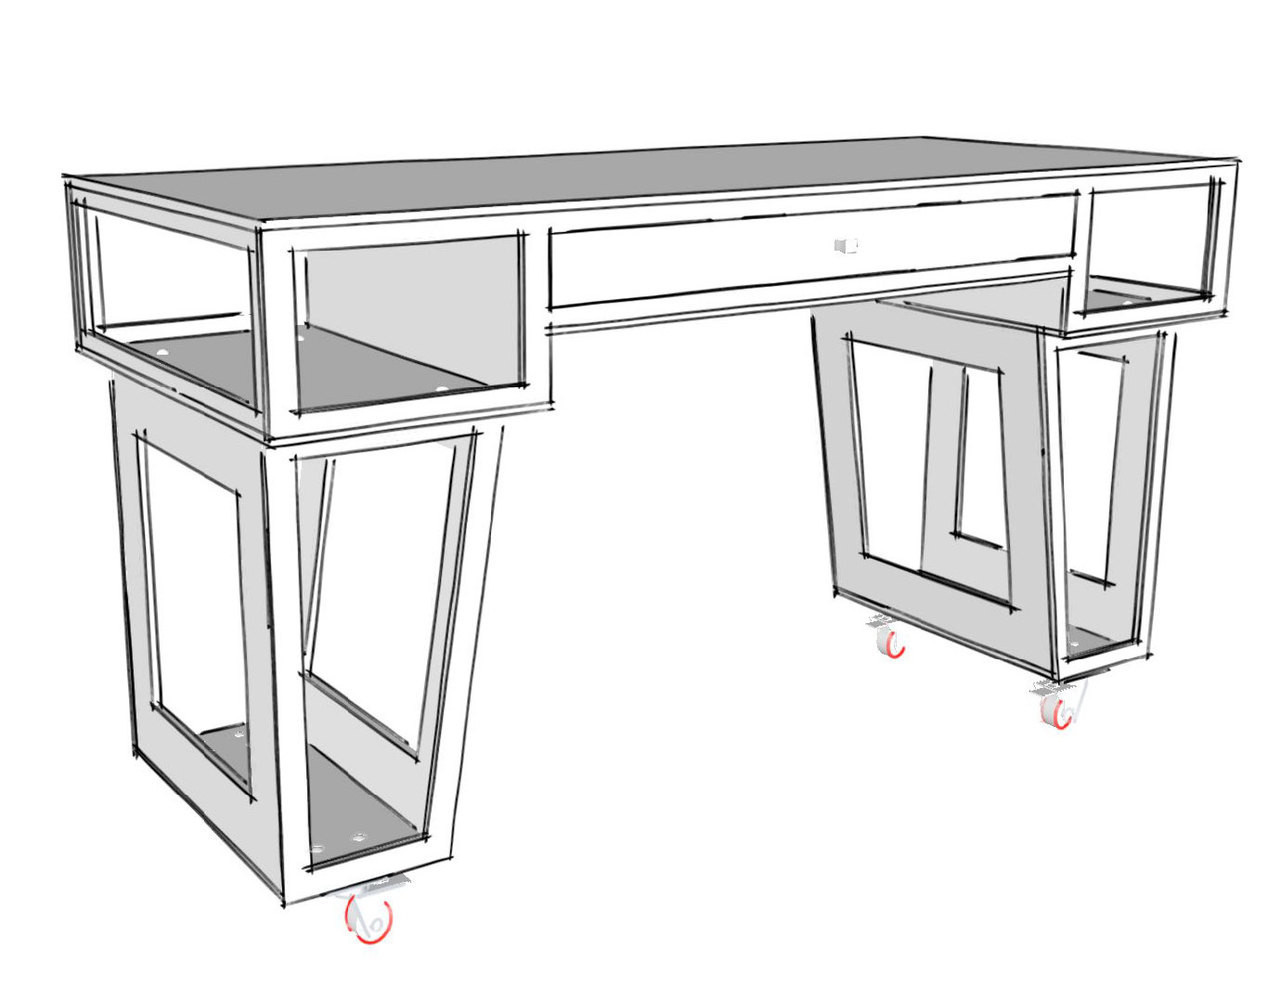 Paulk Standup Desk Standing Desk Plans